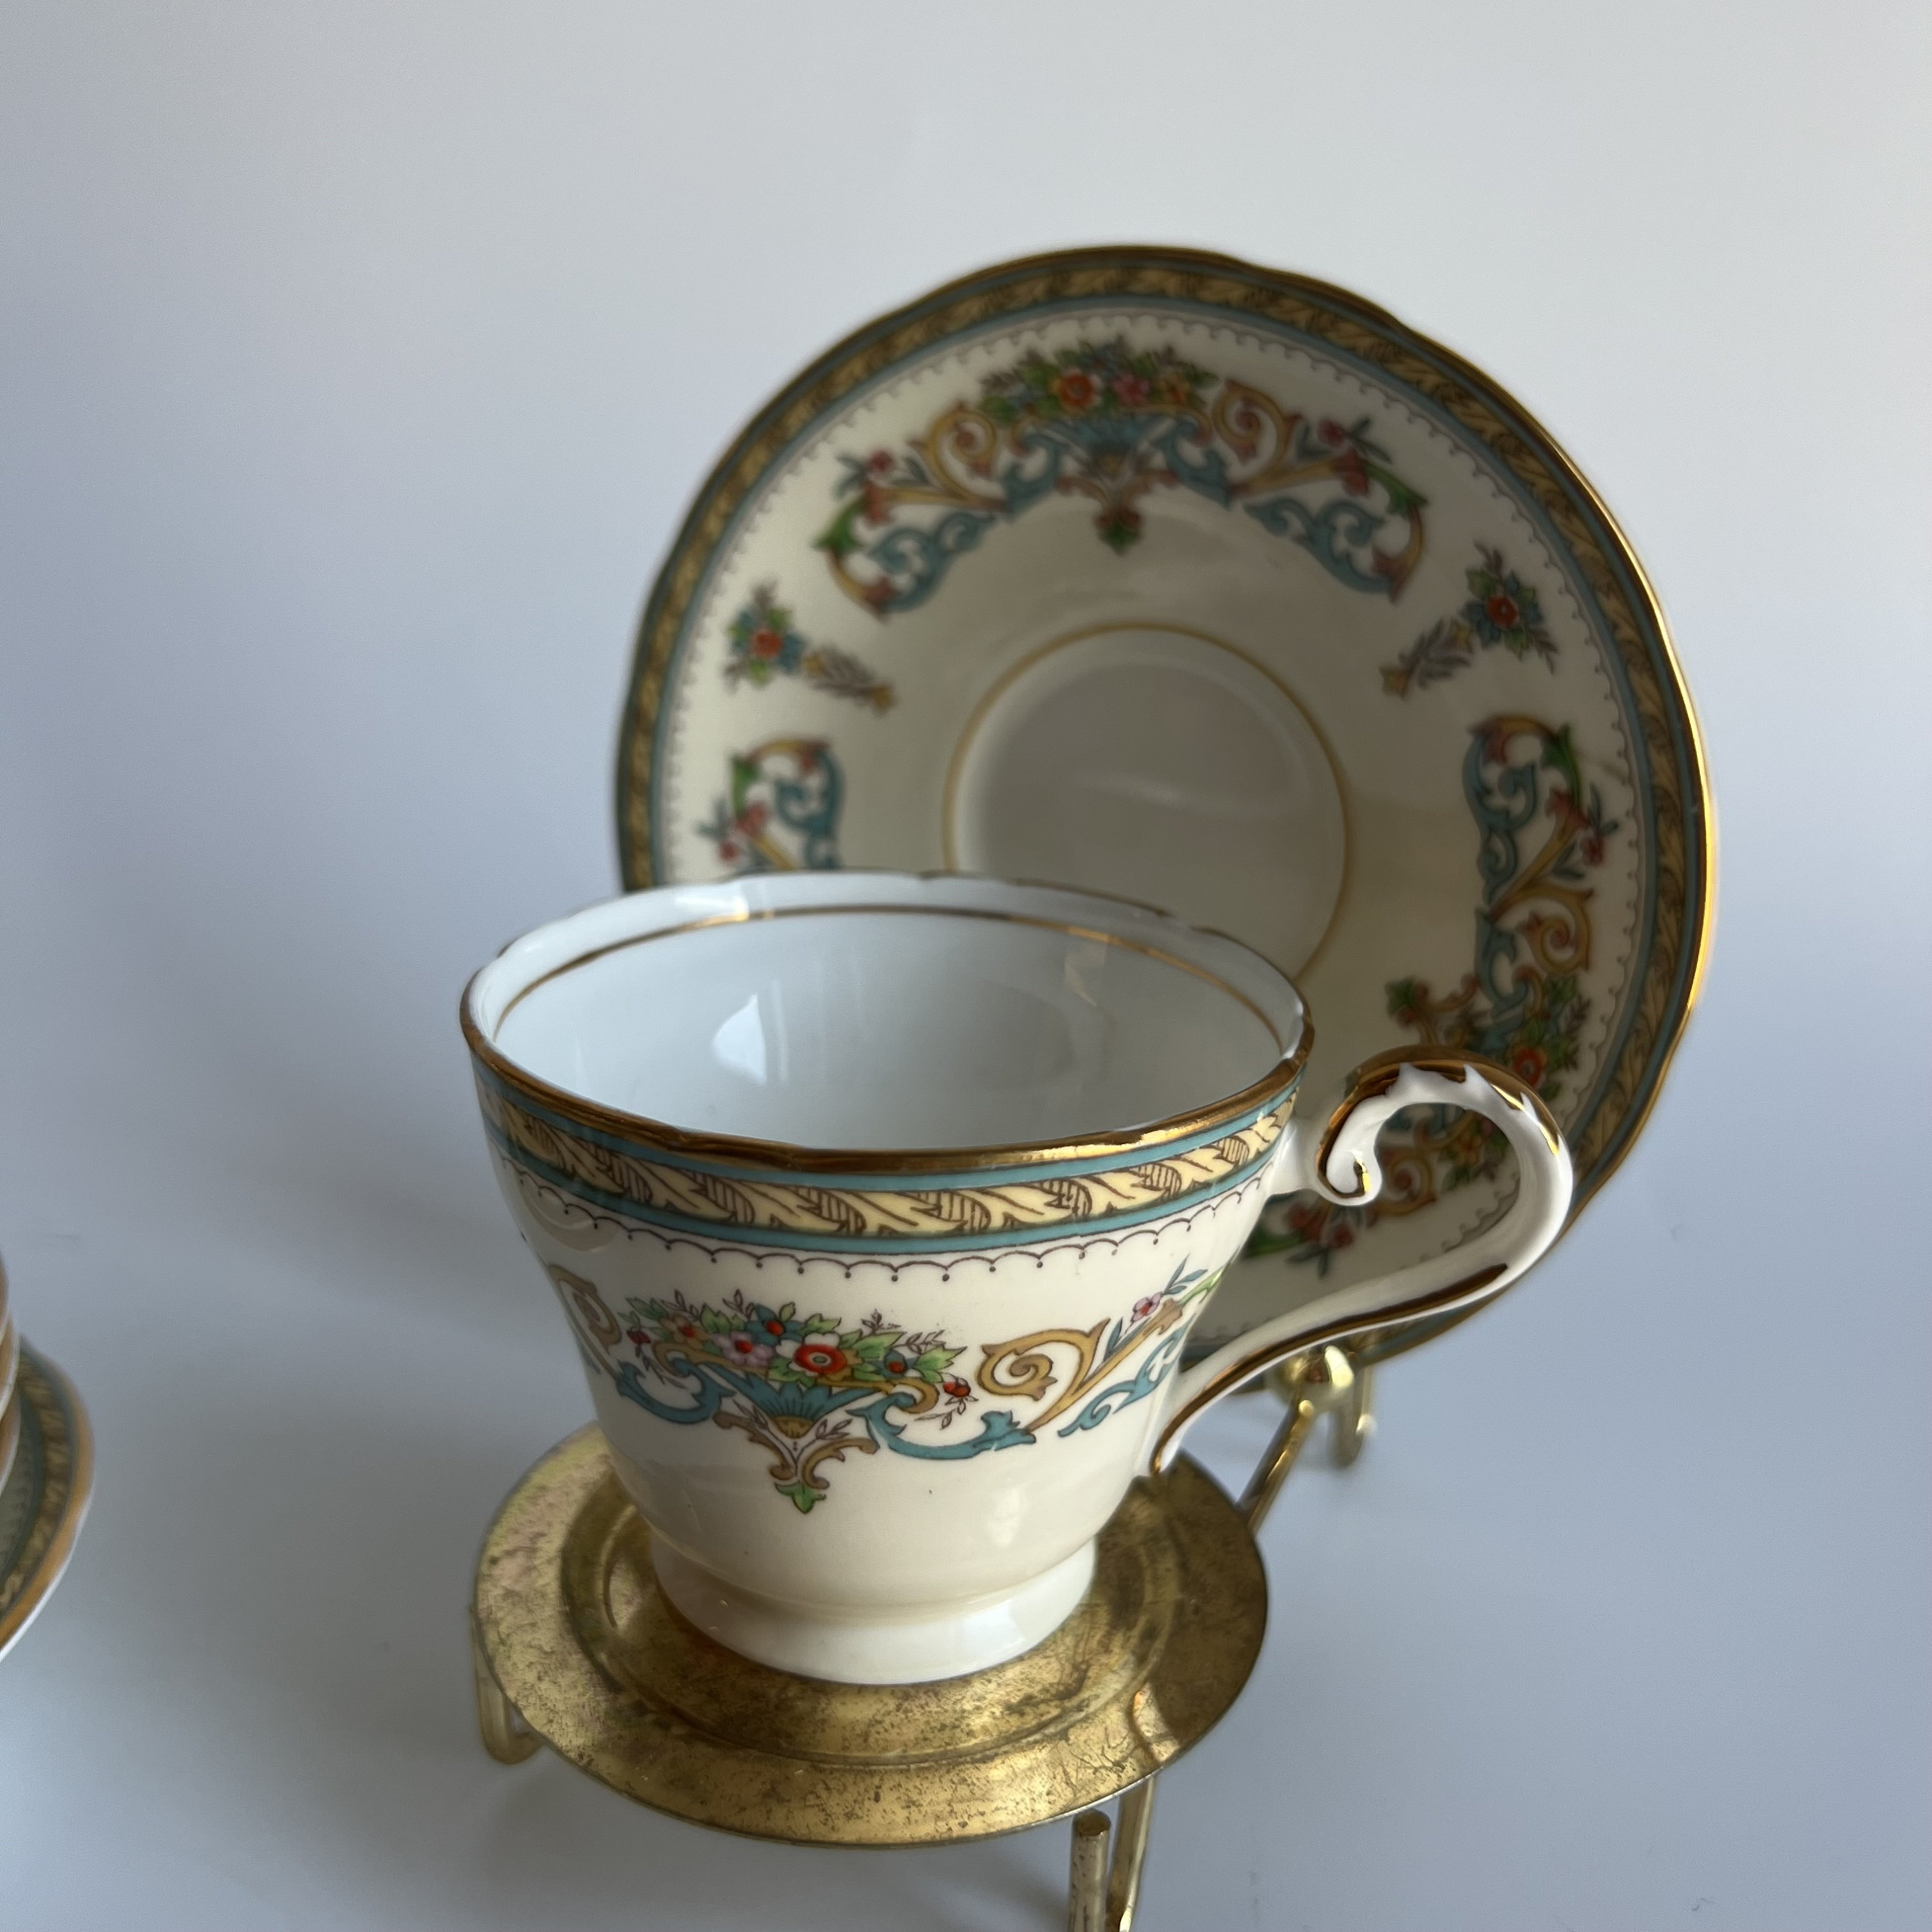 Vintage Pottery By Levine Tea Cup Mug With Tea Bag Pocket Holder Floral